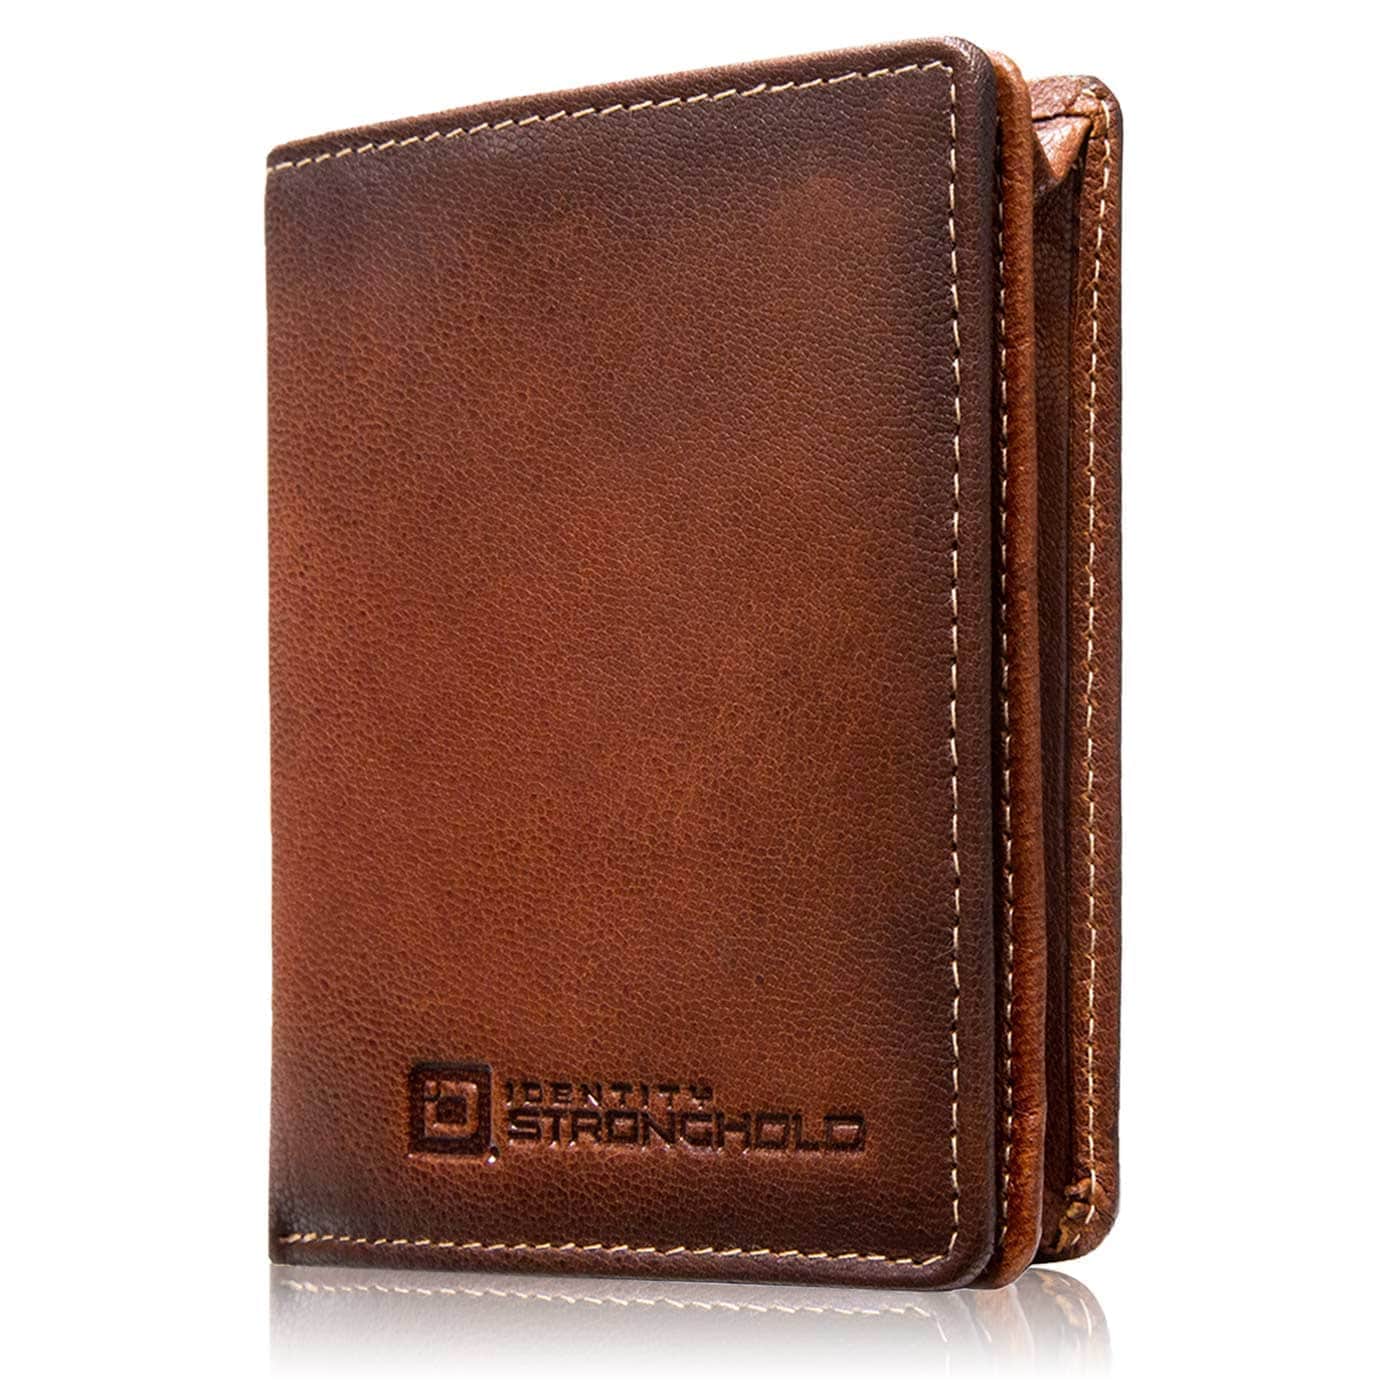 ID Stronghold Men's Wallet Mini Ladies Brown The Waltlet - Maximum Storage RFID Secure Minimalist Wallet